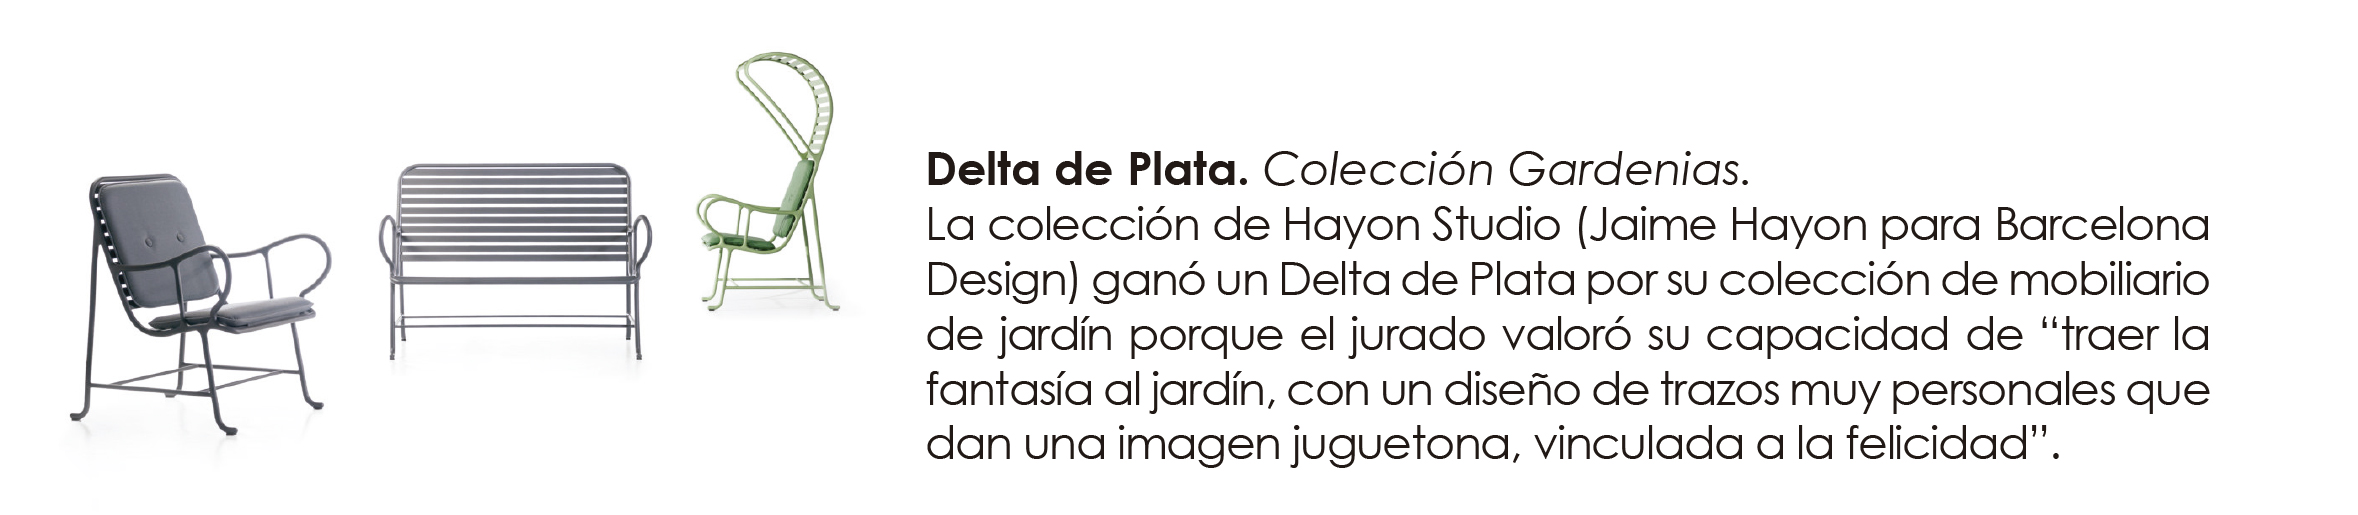 Premios-delta-P1